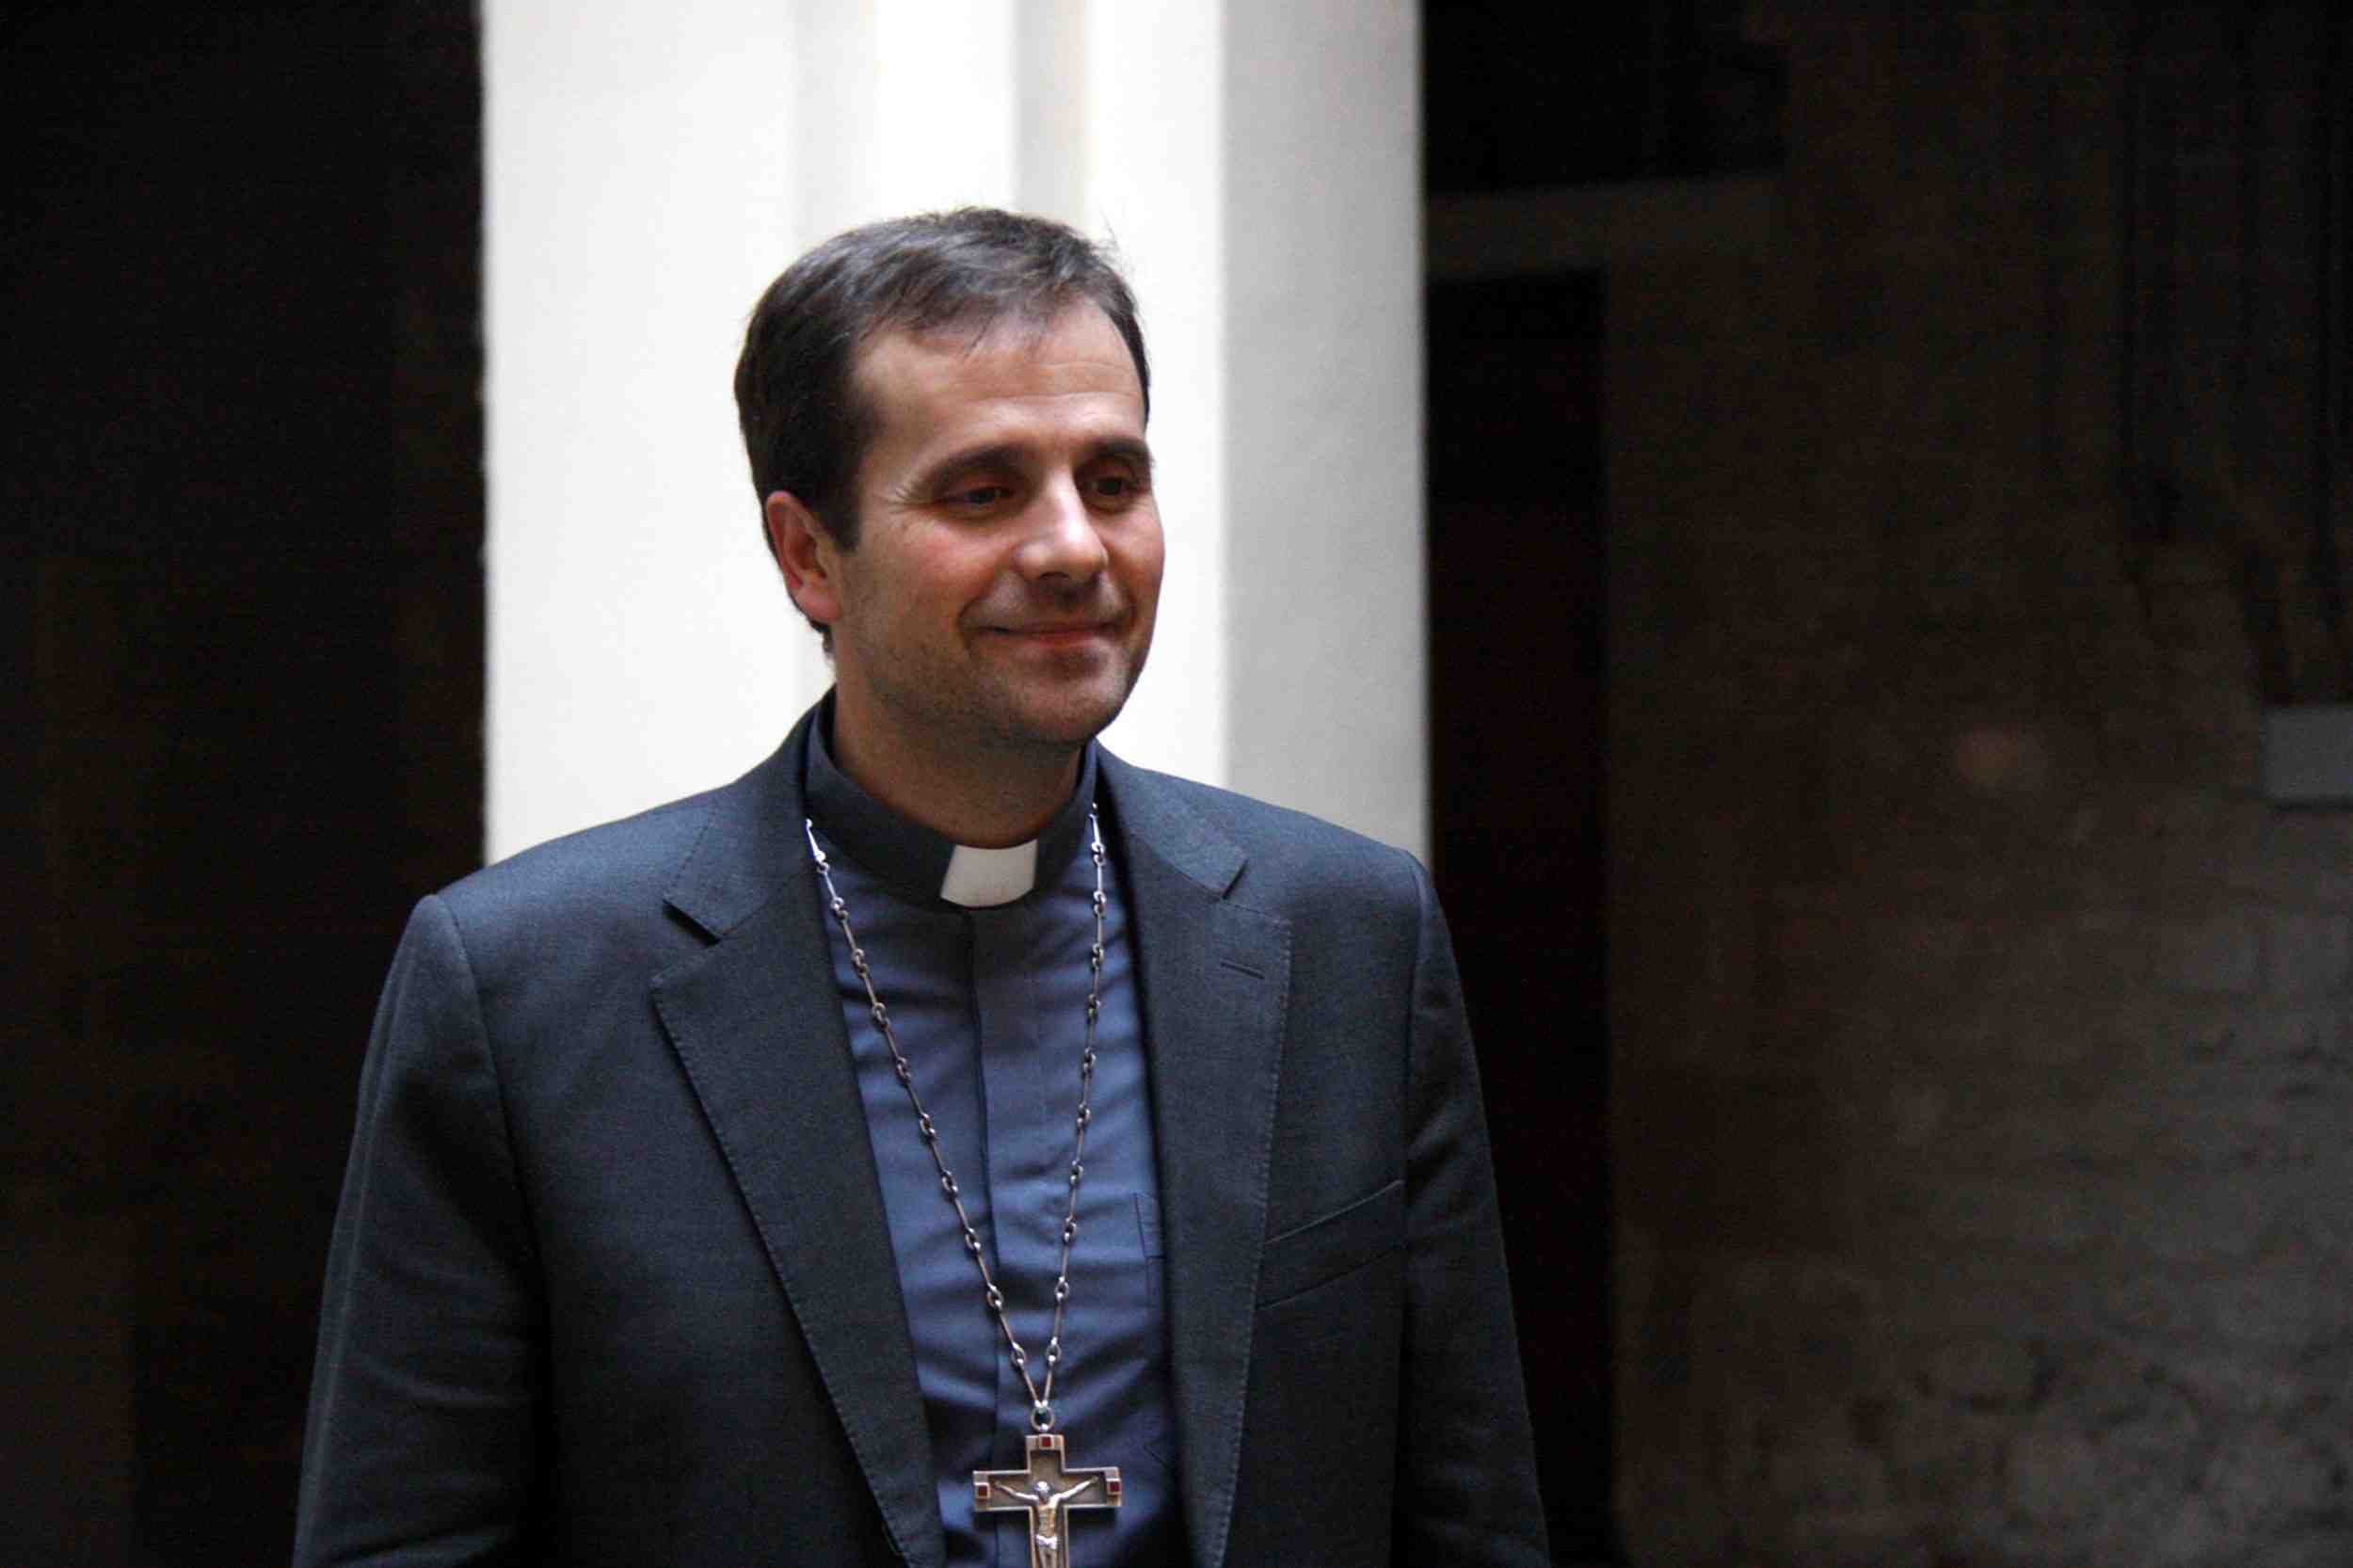 El obispo de Solsona renuncia al cargo por motivos "estrictamente personales"